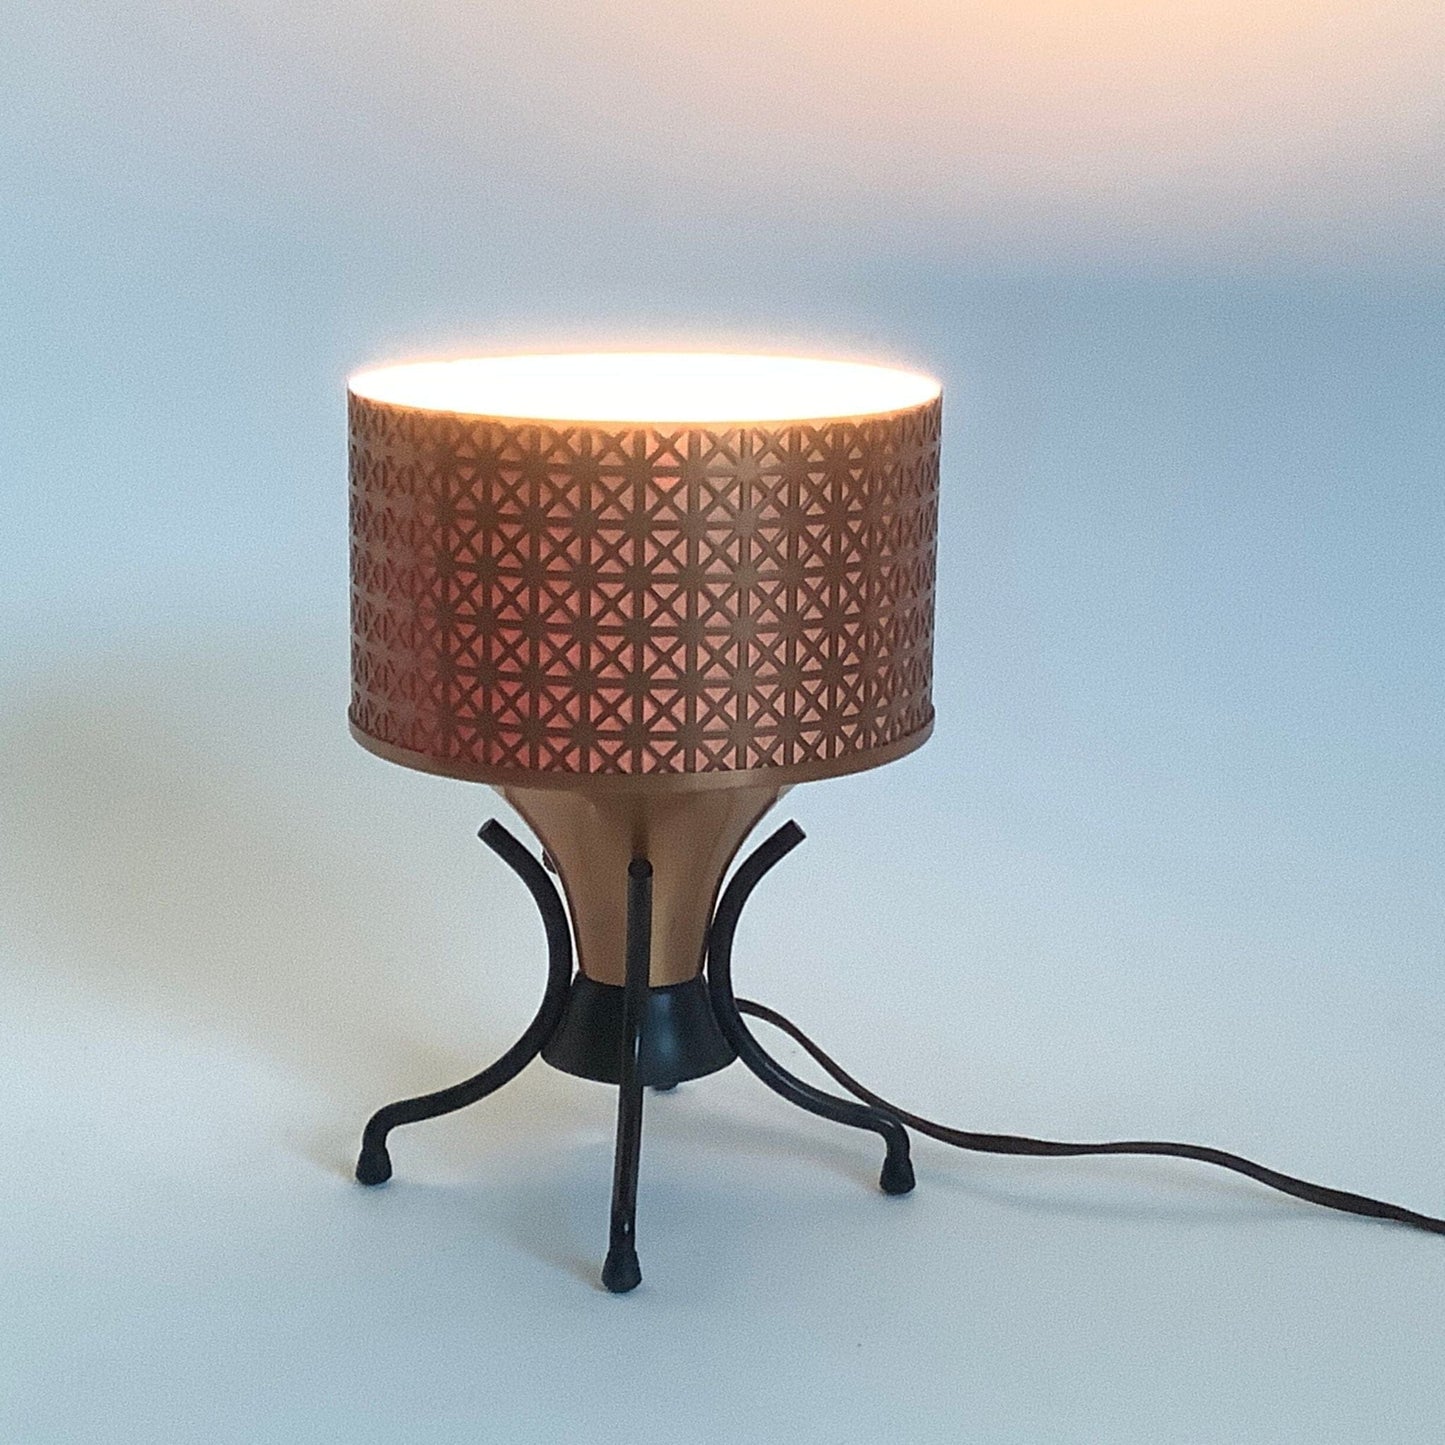 Antique Copper Table Lamp Copper / Copper / Vintage 1920s